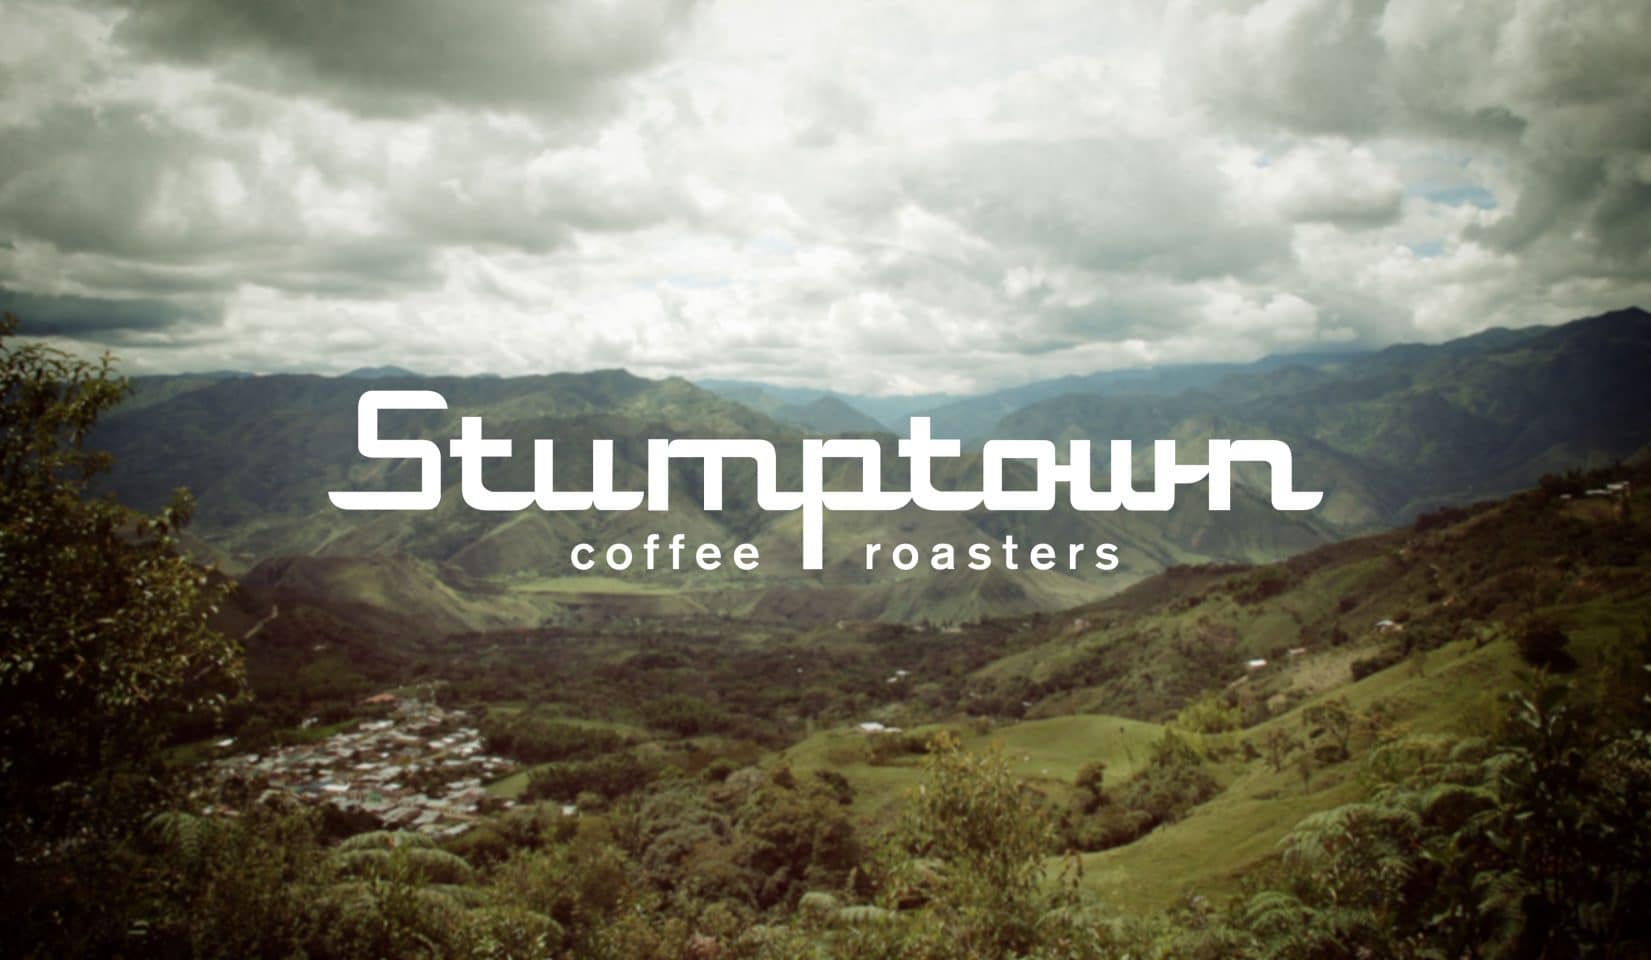 Original Stumptown Coffee Roasters logo by Needmore Designs